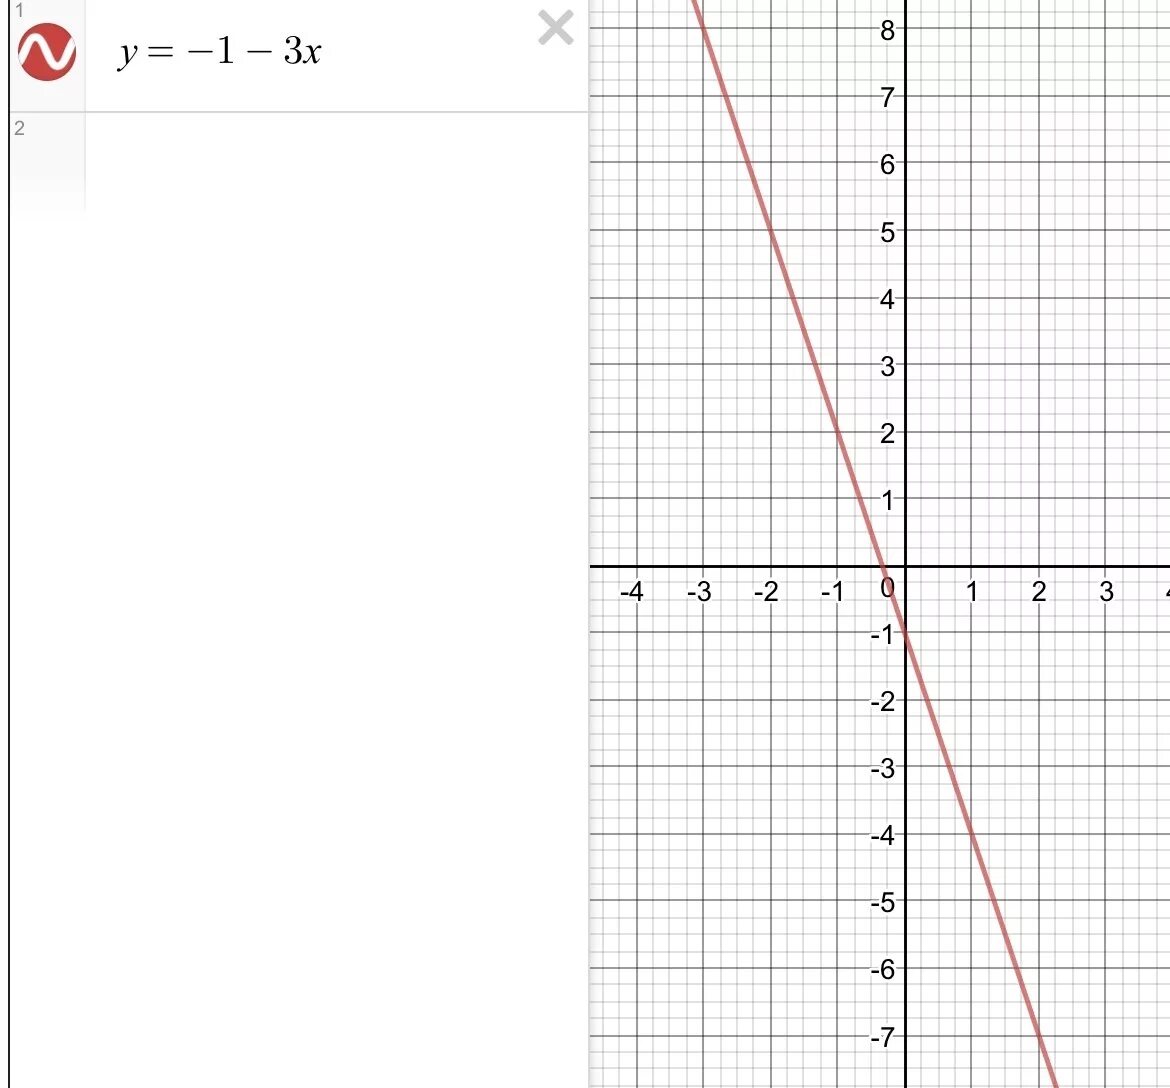 Y 1 5 если x 3. Постройте график функции заданной формулой y 2x+3. График функции заданной формулой y -2x. Постройте график функции заданной формулой y 1/3x+1. Постройте график функции заданной формулой y=-x+1.